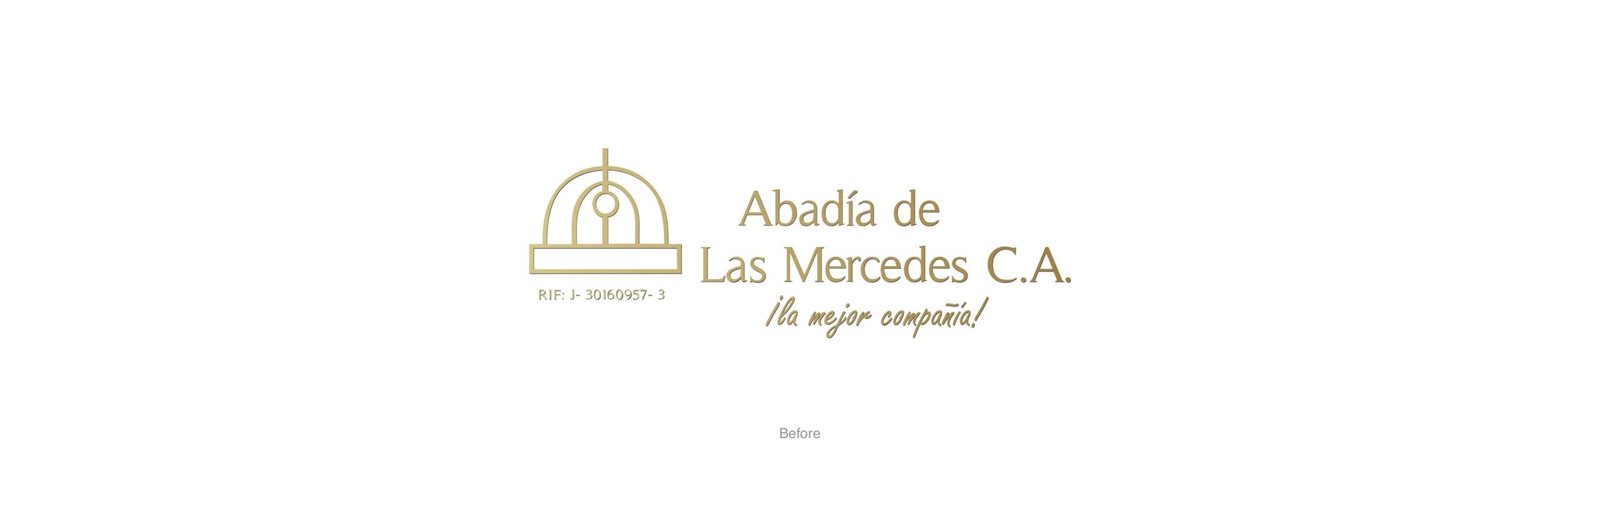 Logotipo viejo de Abadía